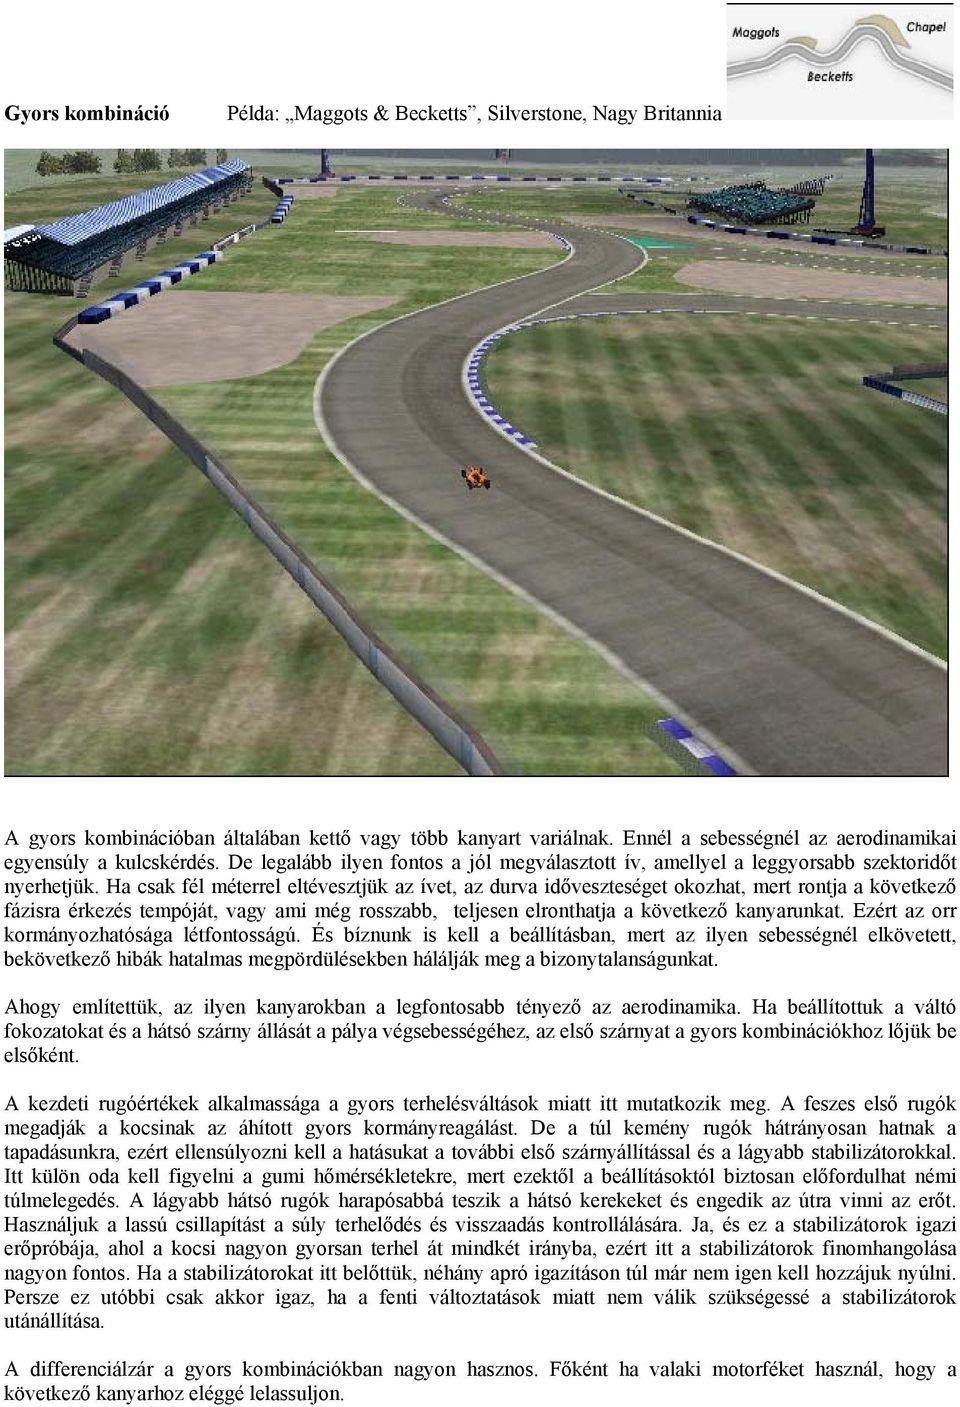 A Formula-1 beállítás iskolája. 2.rész - PDF Ingyenes letöltés